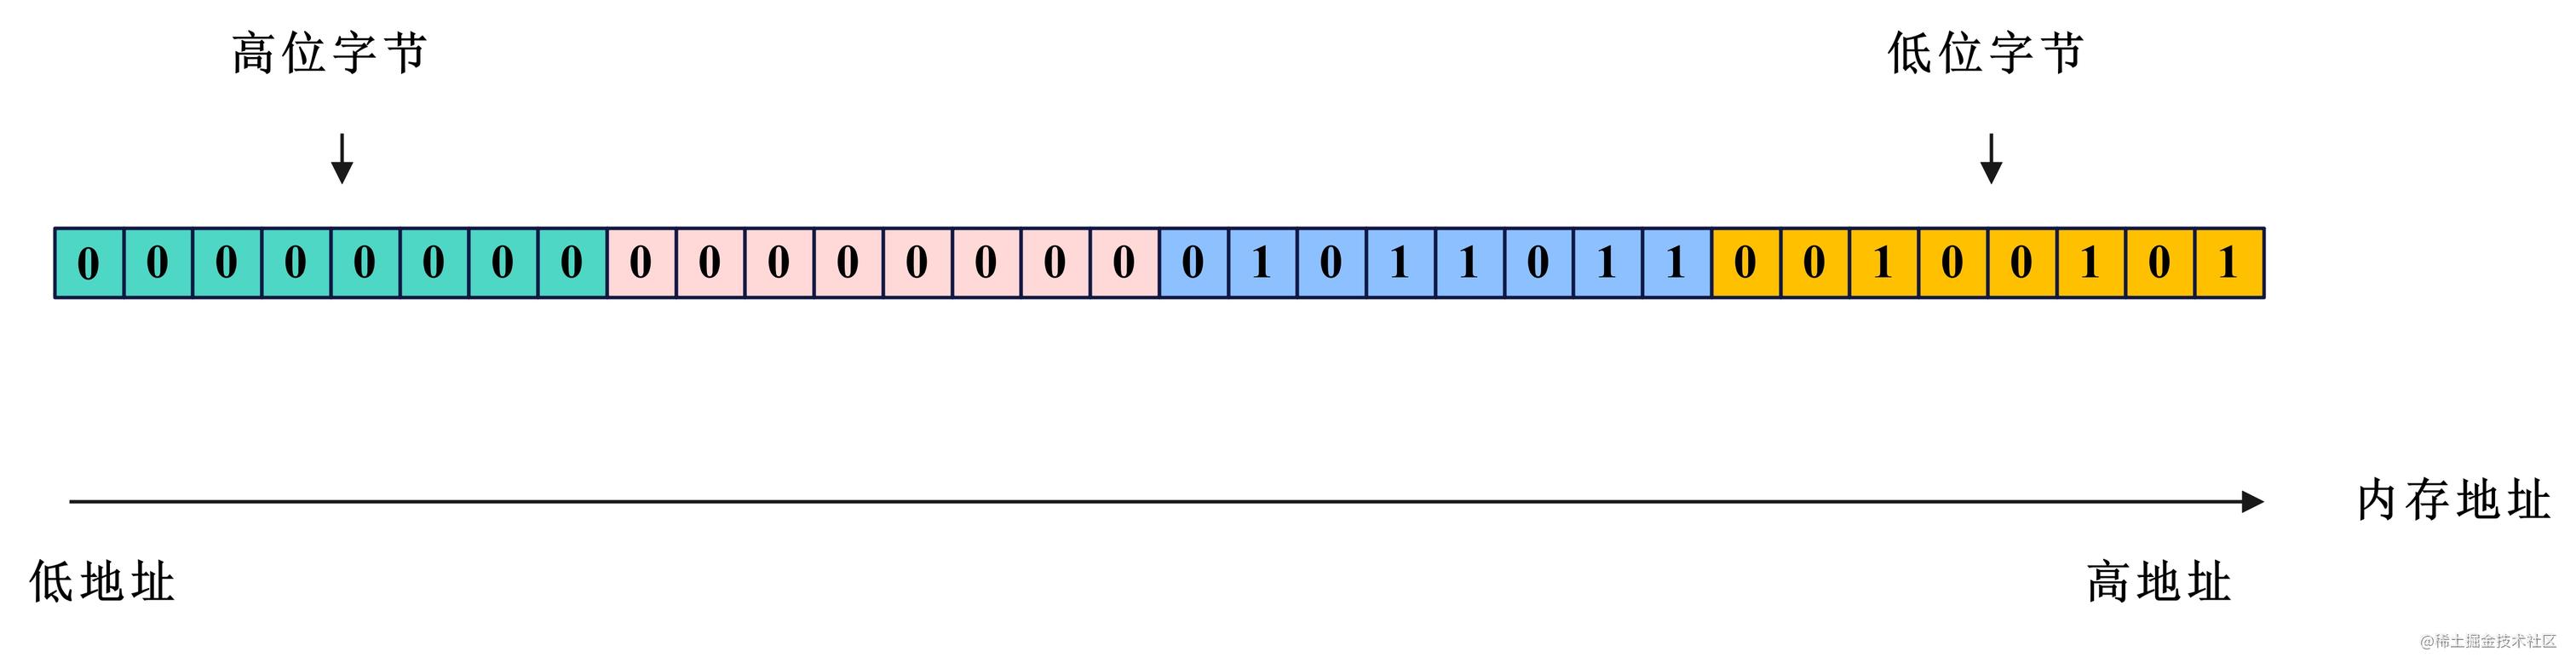 网络编程-大端字节序示意图